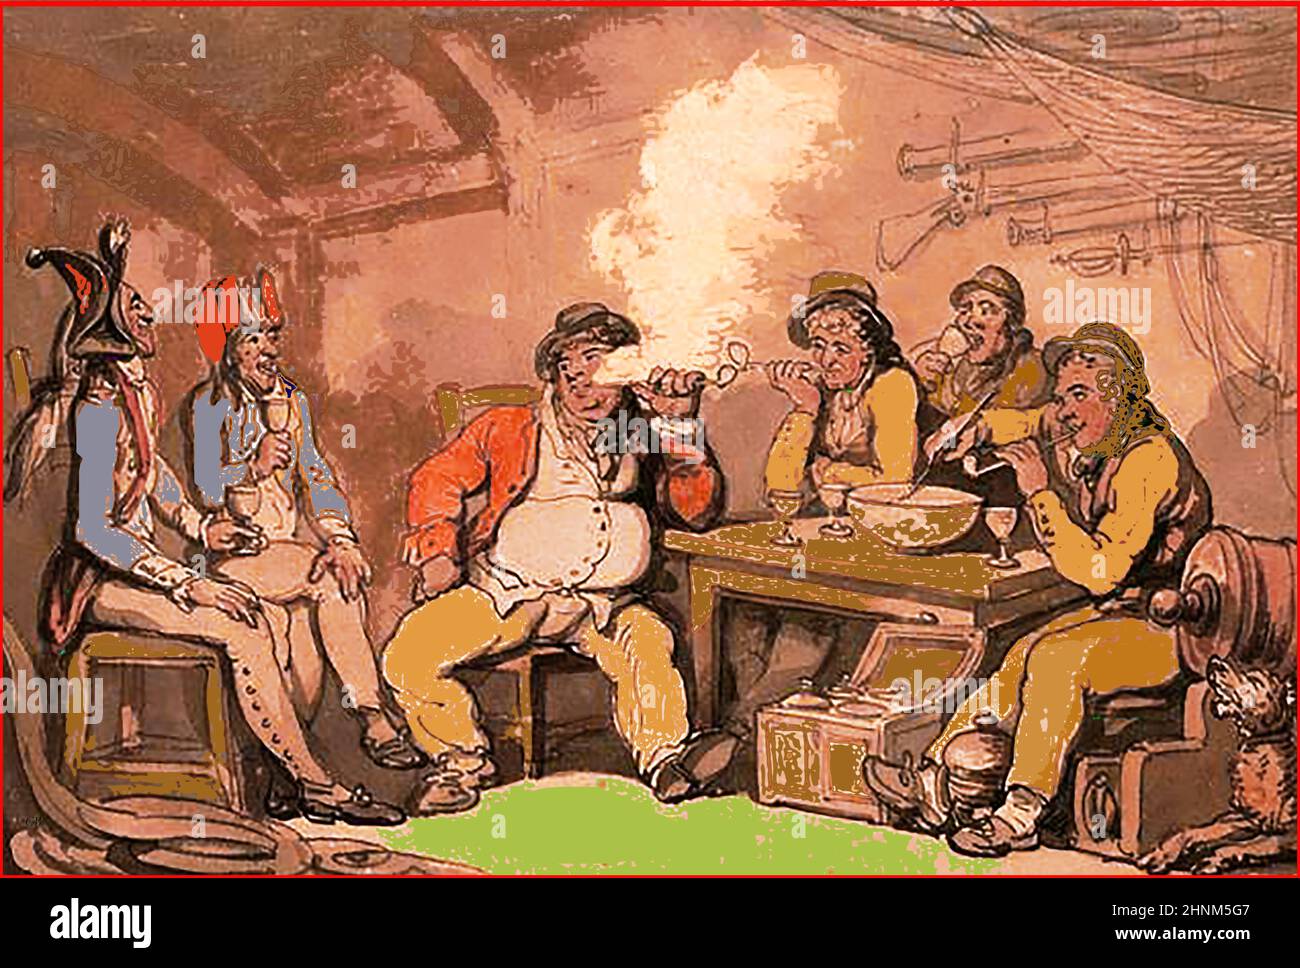 Illustration de couleur du 18th siècle montrant des prisonniers français à bord d'un britannique (marchand ?) navire étant bien traité , probablement à des fins de propagande Banque D'Images